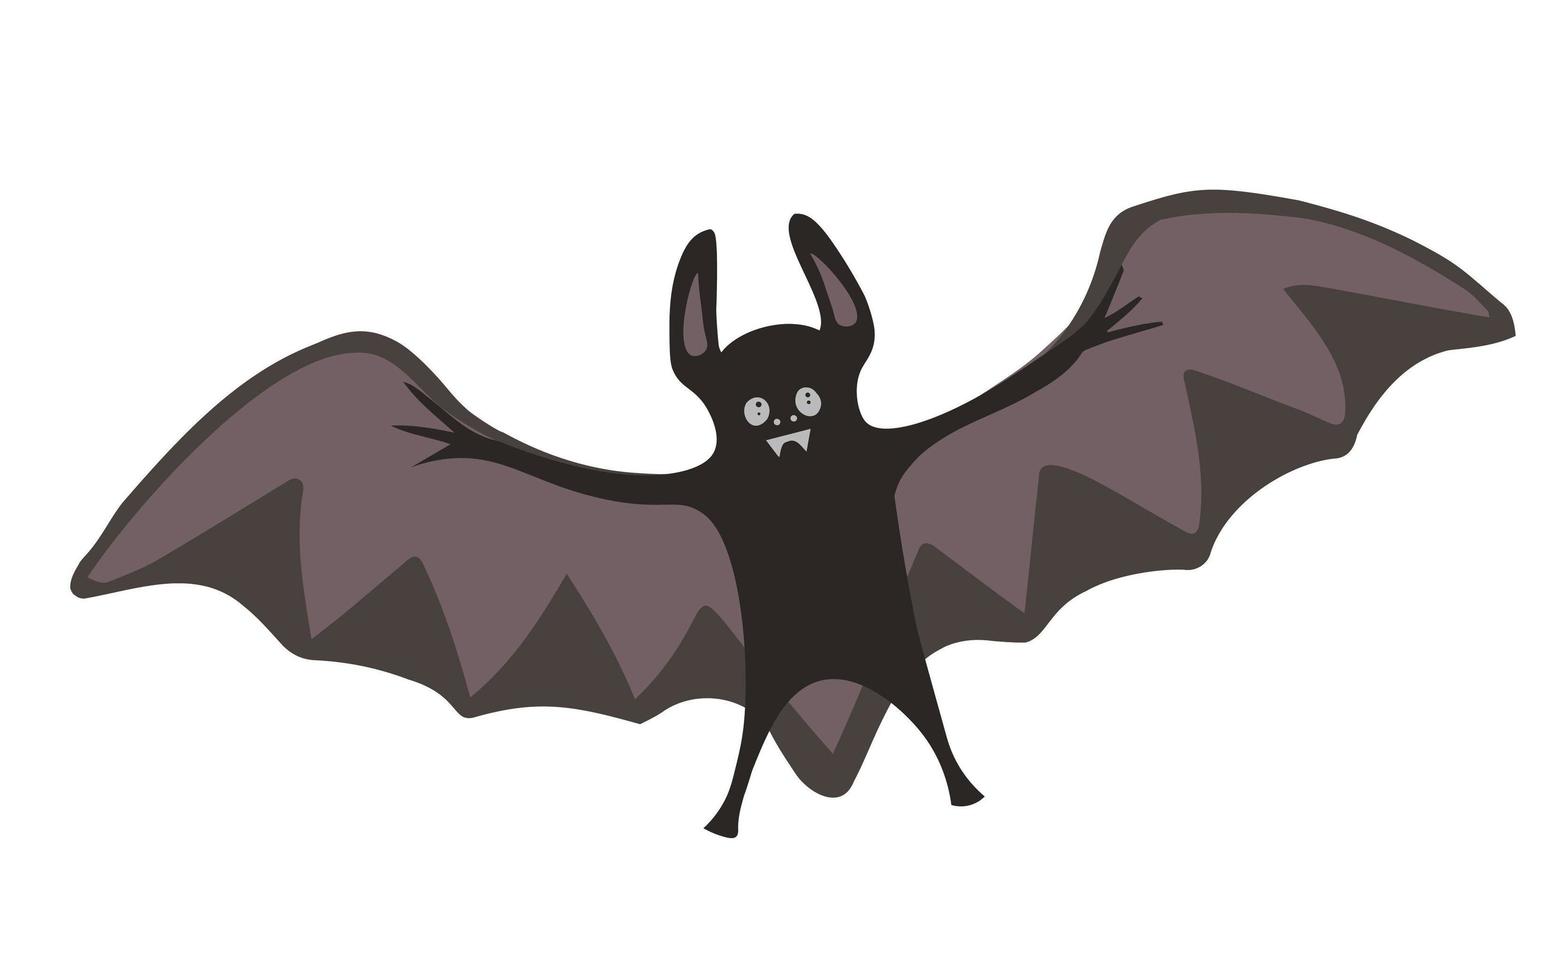 siluetas de murciélagos - ilustración de halloween. ilustración para fondos, fondos de pantalla, envases, tarjetas de felicitación, carteles, pegatinas, diseño textil y de temporada. aislado sobre fondo blanco. vector